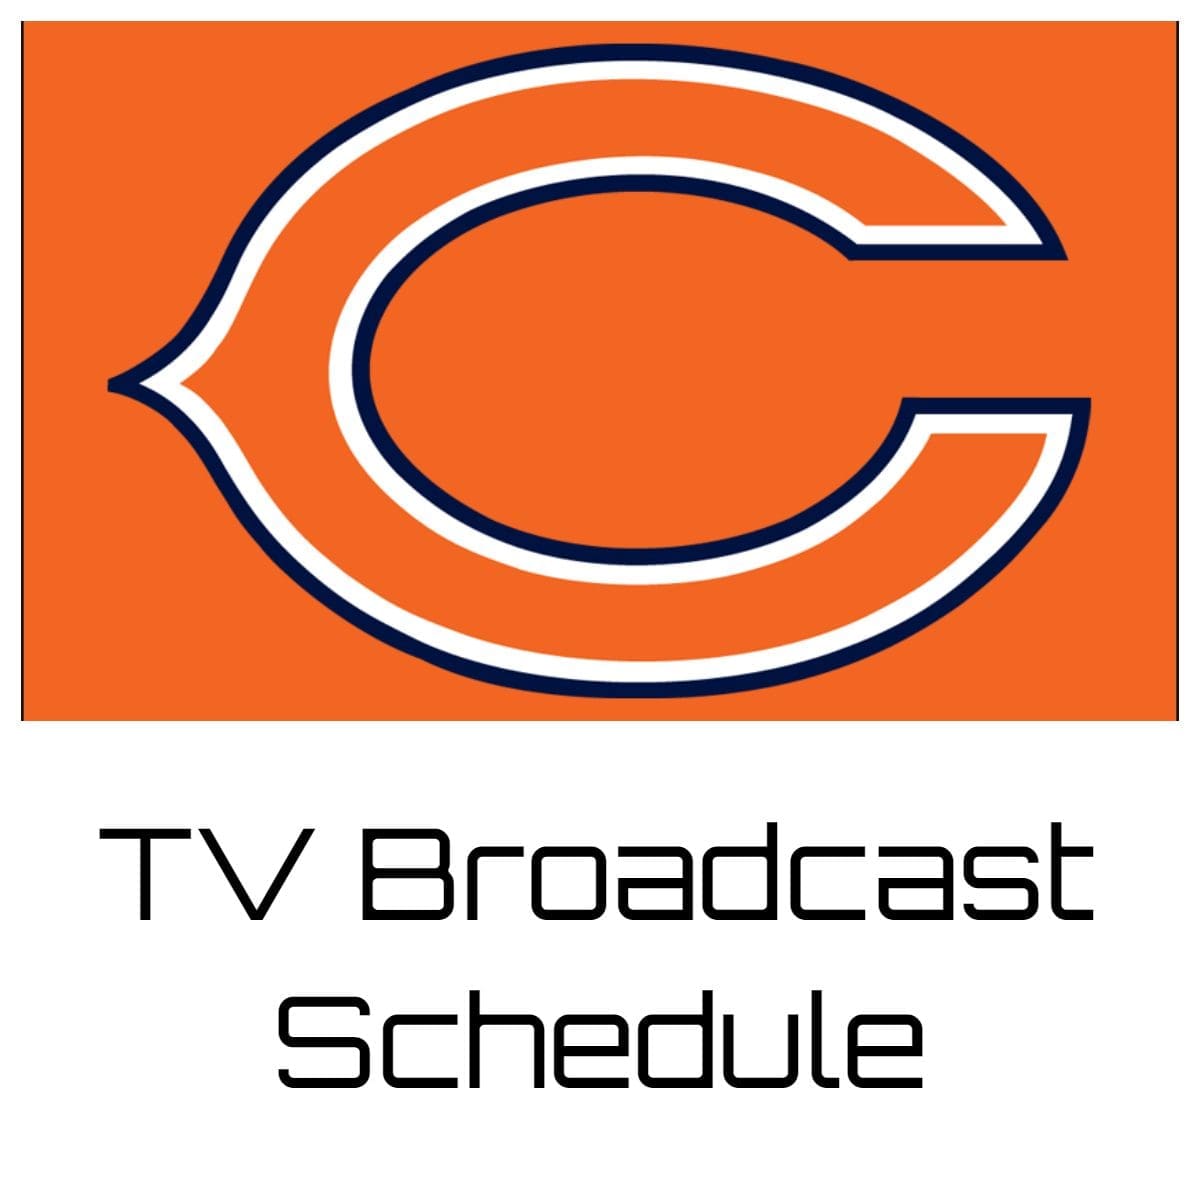 Chicago Bears TV Broadcast Schedule